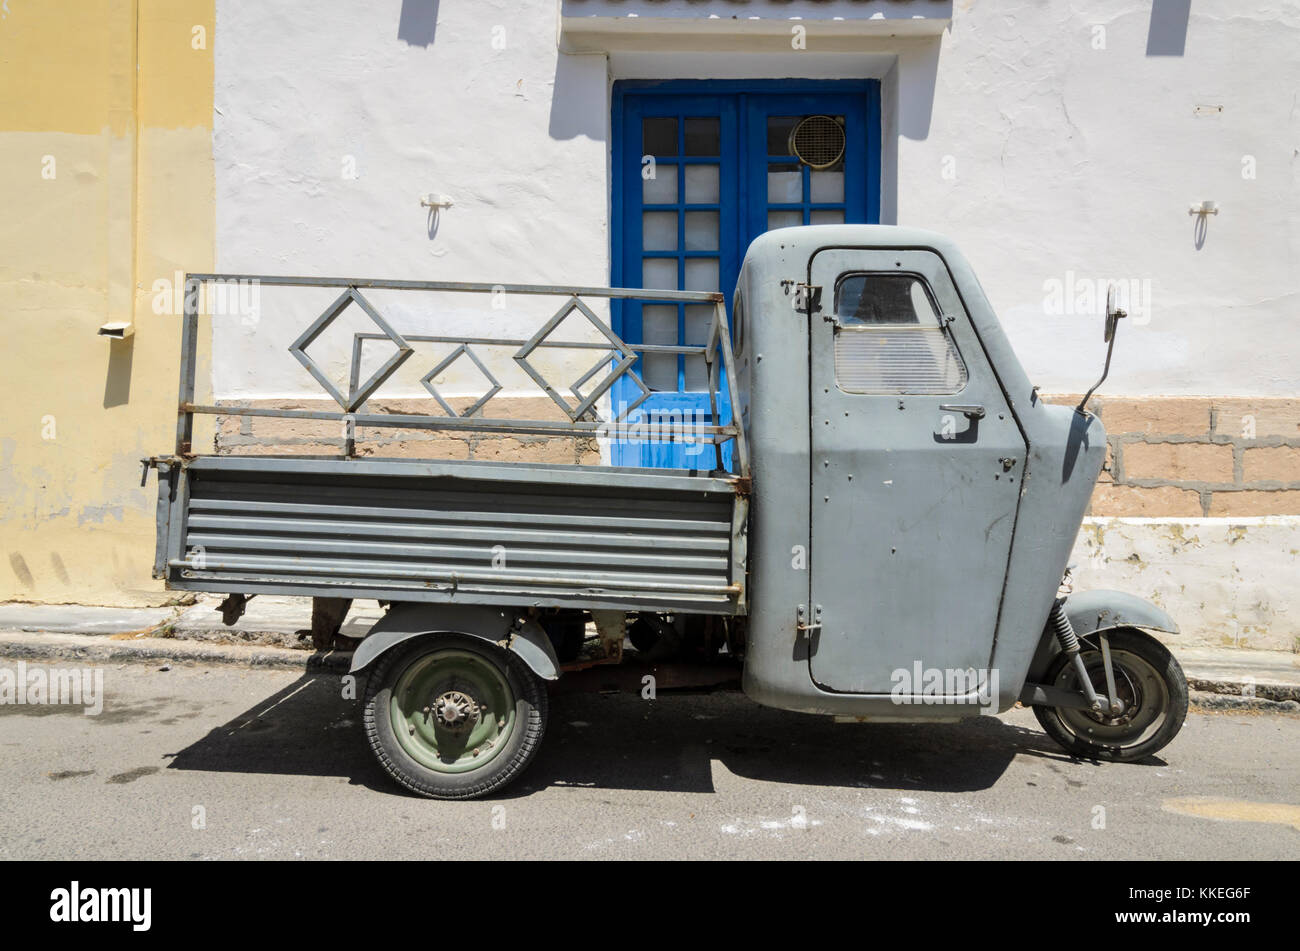 Vieux camion véhicule utilitaire à trois roues sur l'île d'Egine, Grèce Banque D'Images